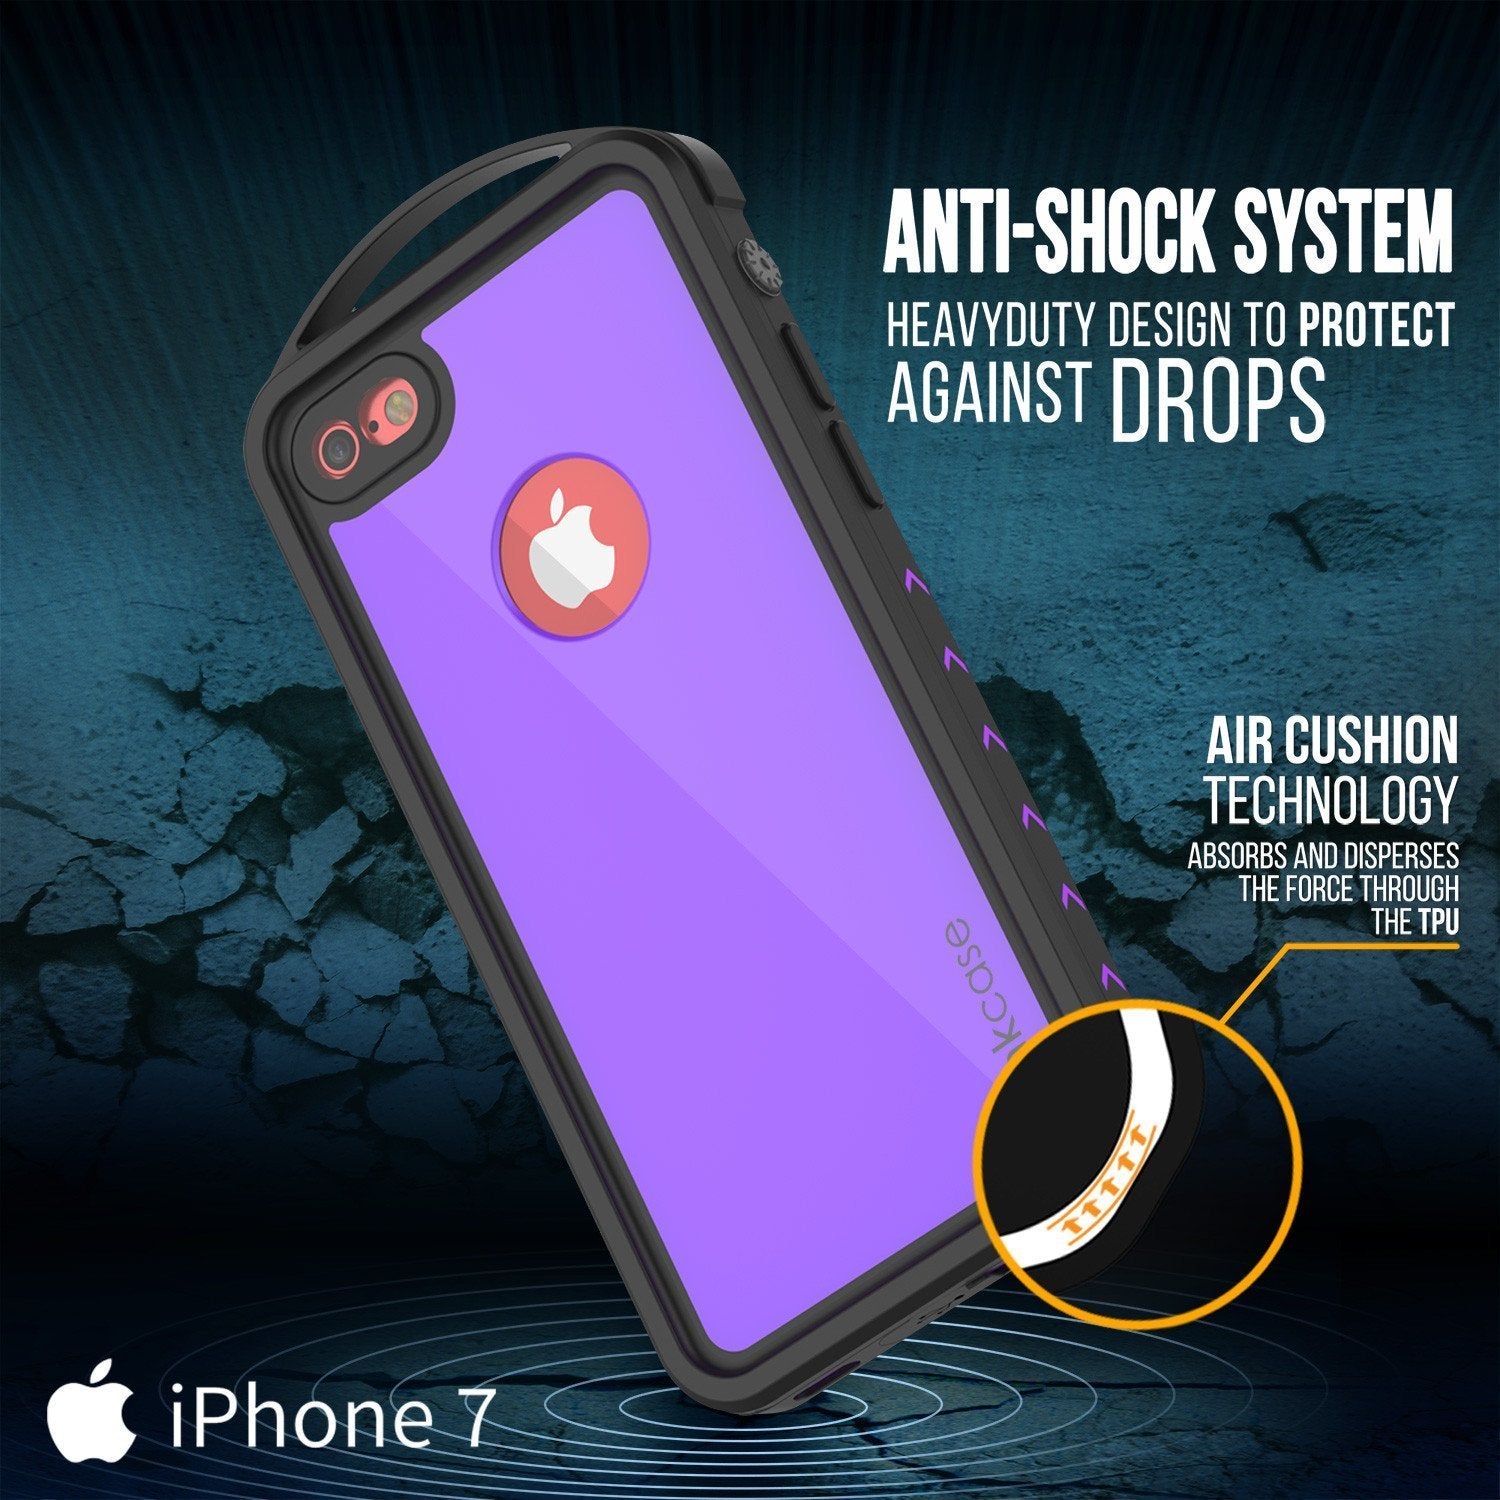 iPhone SE (4.7") Waterproof Case, Punkcase ALPINE Series, Purple | Heavy Duty Armor Cover